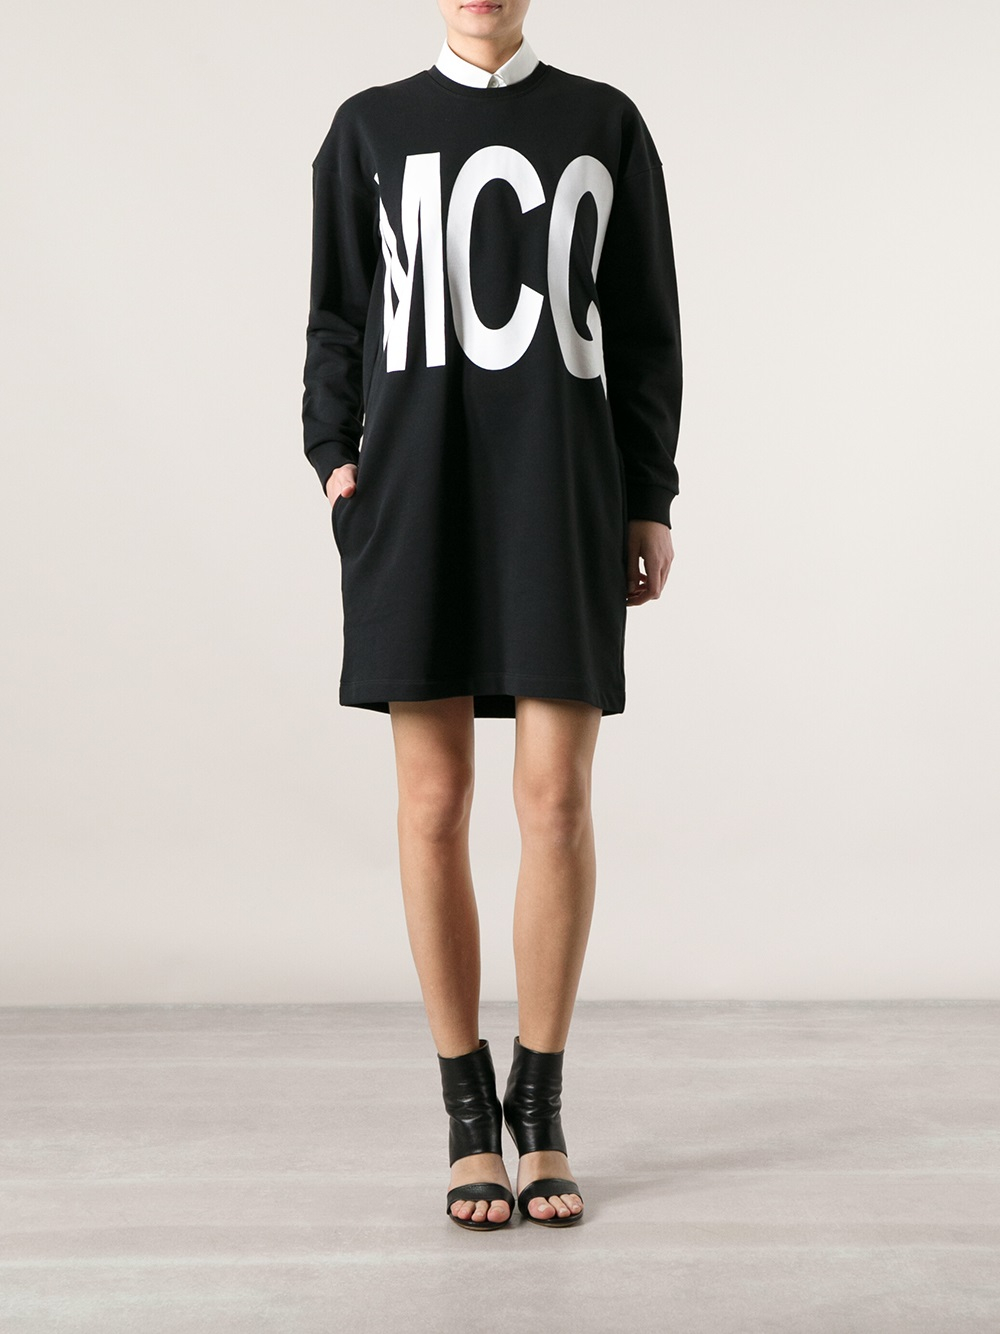 Lyst - Mcq Mcq Sweater Dress in Black